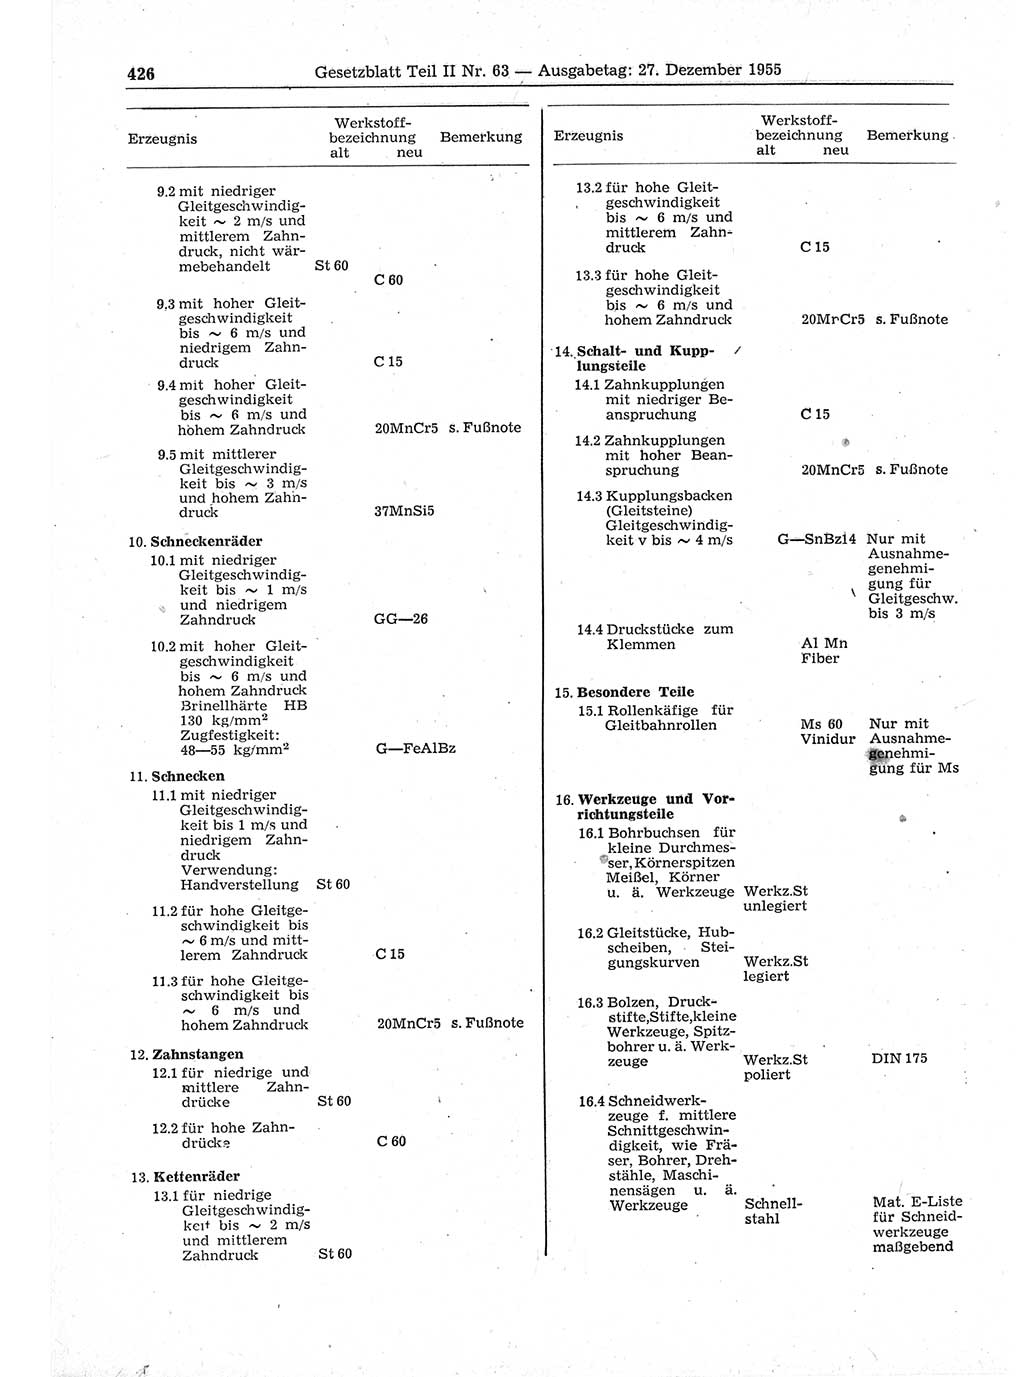 Gesetzblatt (GBl.) der Deutschen Demokratischen Republik (DDR) Teil ⅠⅠ 1955, Seite 426 (GBl. DDR ⅠⅠ 1955, S. 426)